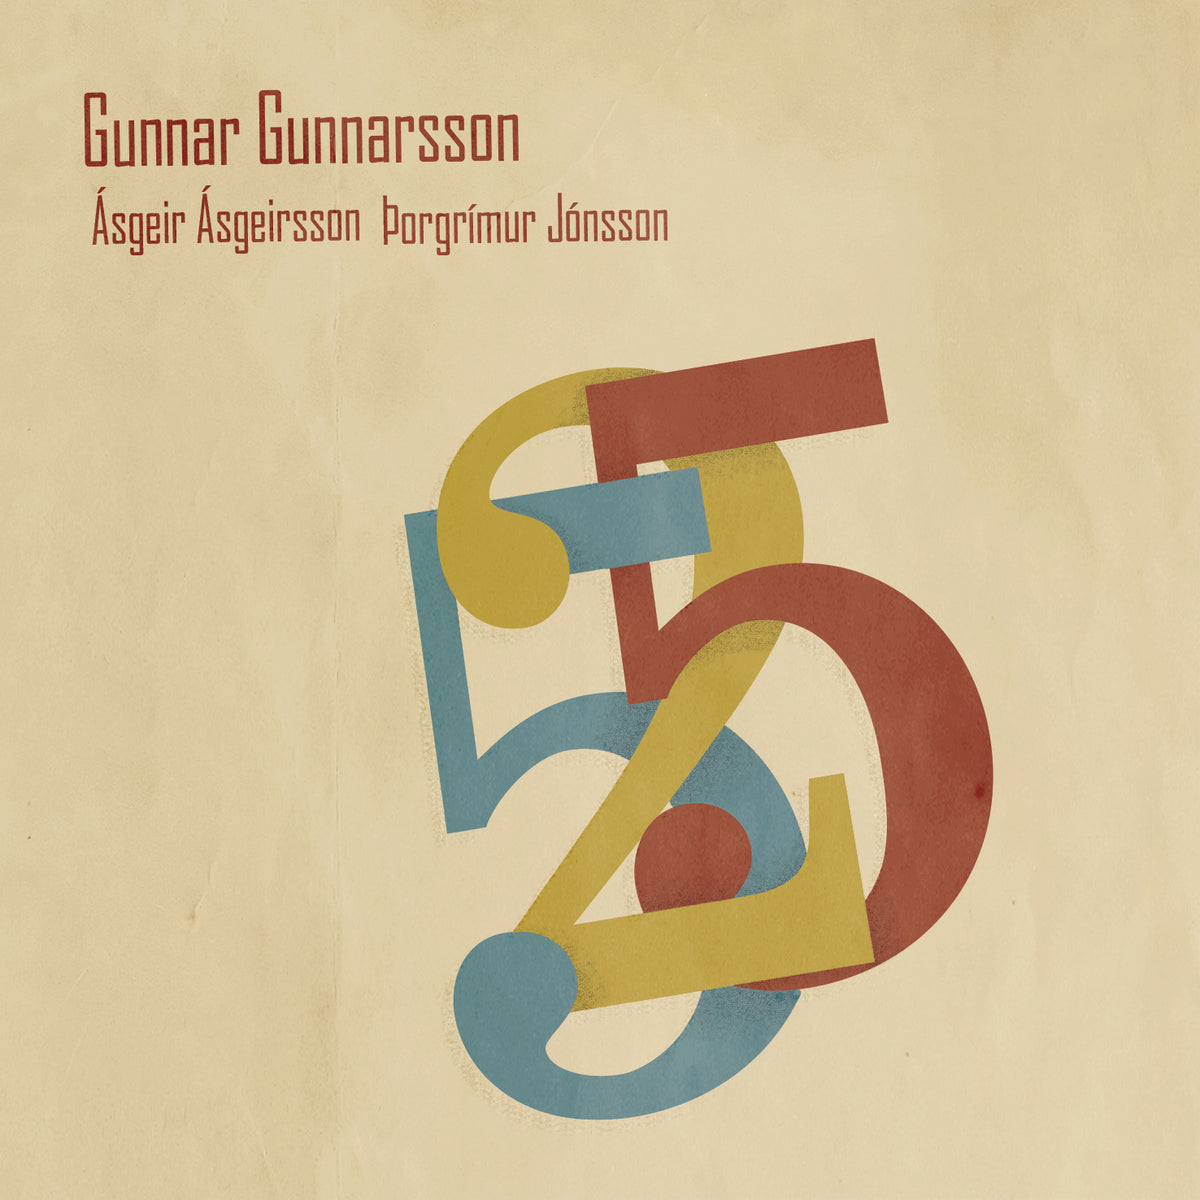 Gunnar Gunnarsson - 525 (CD)